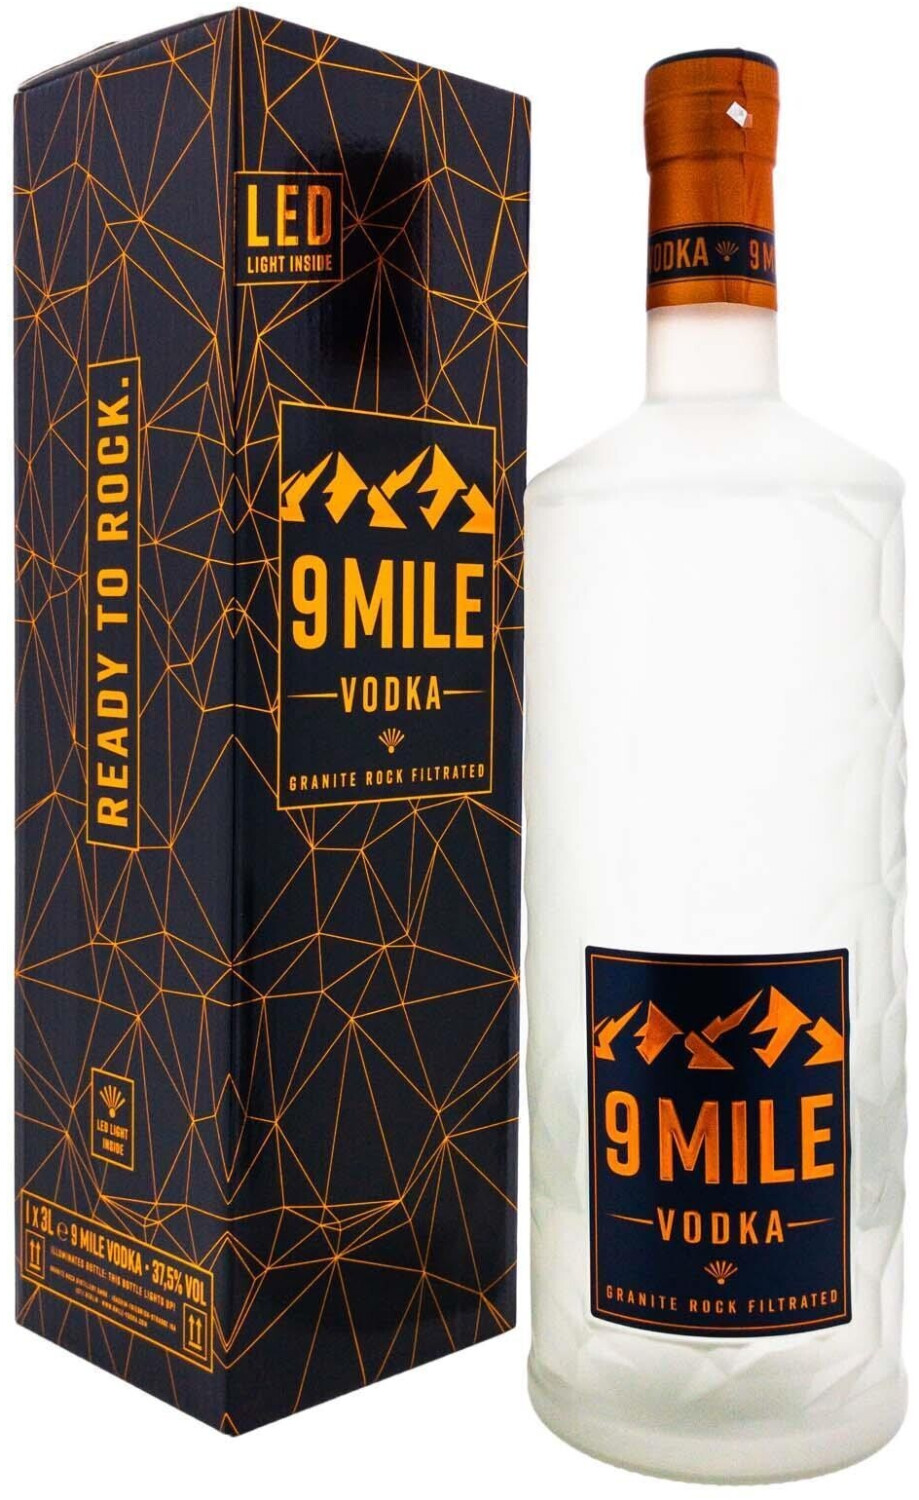 9 Mile Vodka 3L inkl. LED-Licht – think big